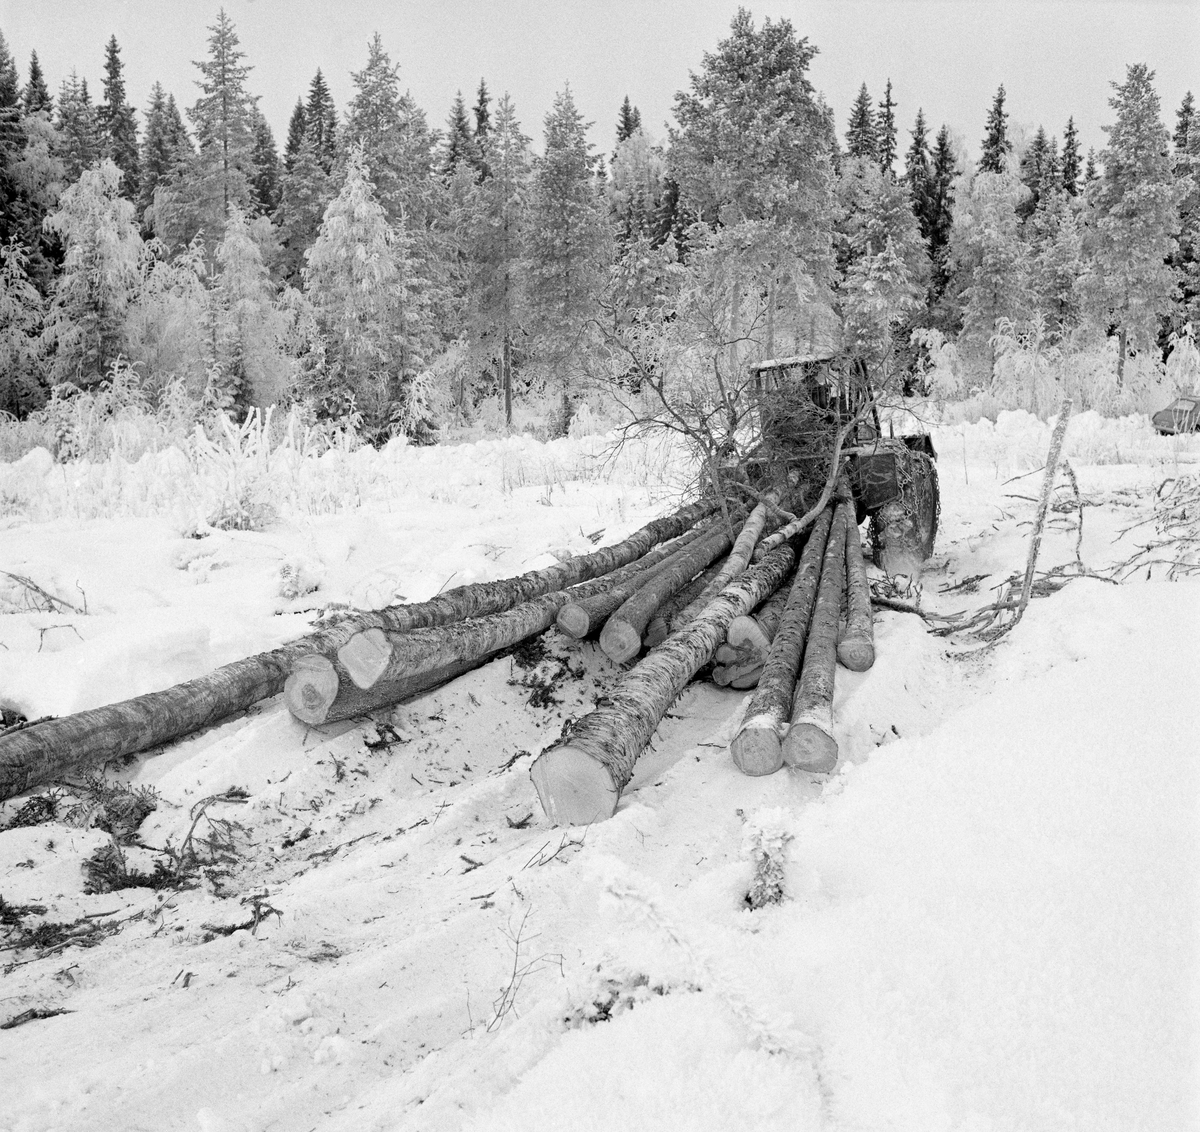 Lunning av tømmer på snødekt mark i Trysil, Hedmark, vinteren 1971. Tømmeret snarekjøres bak en traktor med vinsj og lunnepanne. Lunnepanna er en stålskjerm som er montert bak på traktoren for å skjerme og beskytte. Den kan heves og senkes ved hjelp av traktorens hydraulikk. I lav stilling gir denne lunnepanna god forankring under innvinsjing, og den kan også fungere som sperre dersom traktoren skulle steile ved ujevnheter i terrenget. Stokkene - som her var av både gran og bjørk - ble stroppet med ståtau og trukket mot lunnepanna ved hjelp av en vinsj. En av bjørkestammene var fortsatt ukvistet. Denne snarekjøringsteknikken var forholdsvis effektiv - både på- og avlessinga gikk raskt unna, og arbeidet kunne gjøres ved hjelp av en vanlig landbrukstraktor - en maskin de fleste skogeiere disponerte.